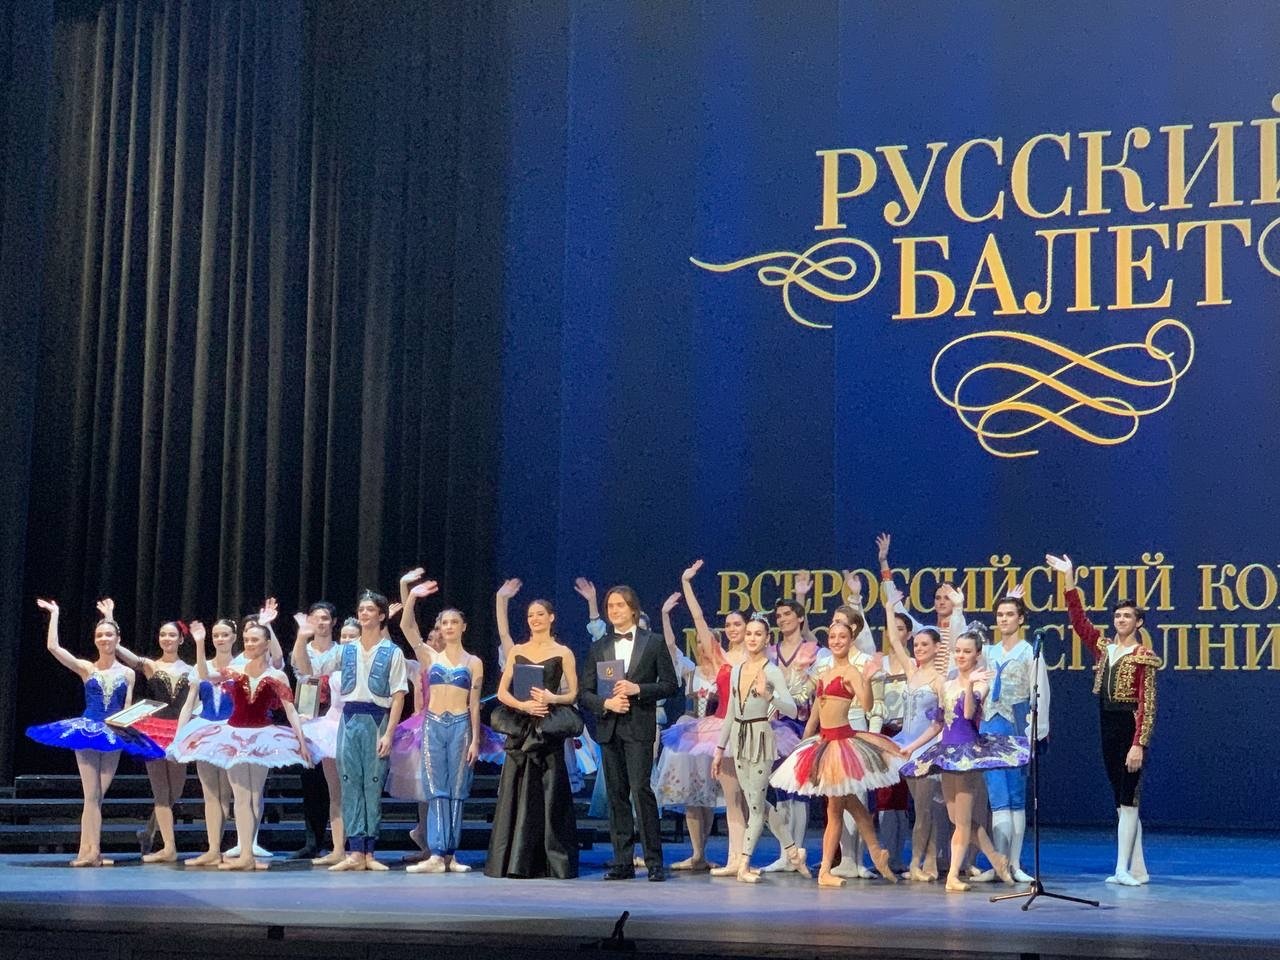 Всероссийский конкурс молодых исполнителей "Русский балет"